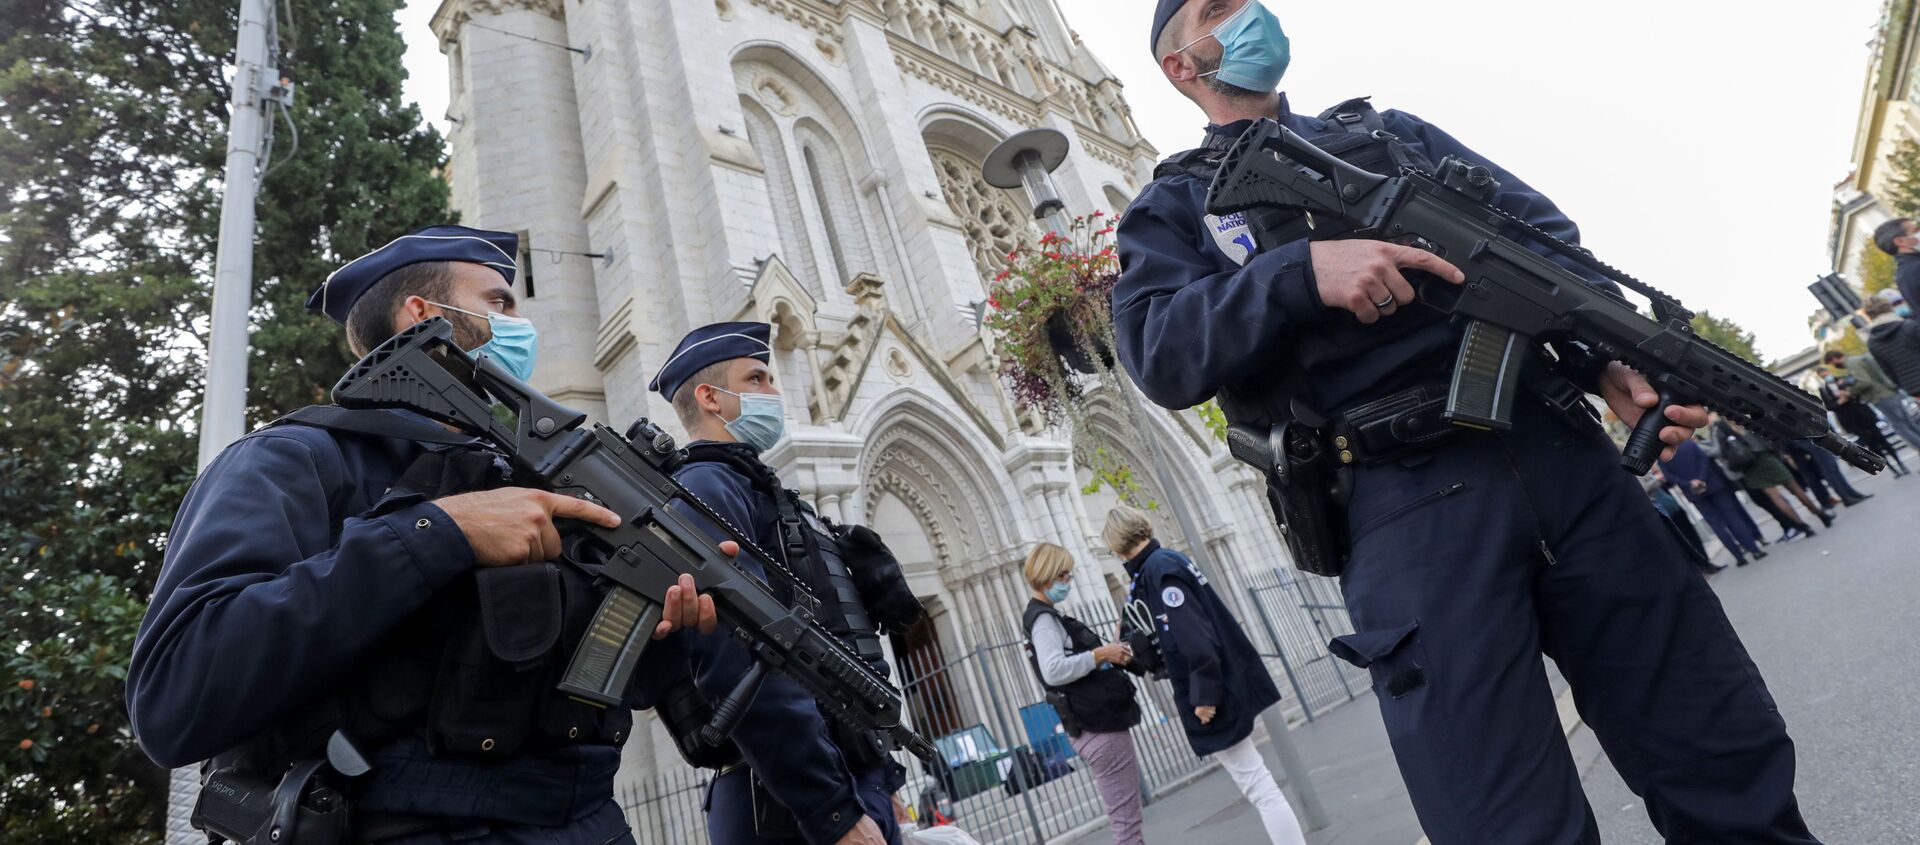 Các sĩ quan cảnh sát tại hiện trường nơi giáo dân bị tấn công trong nhà thờ Đức Bà ở Nice. - Sputnik Việt Nam, 1920, 30.10.2020